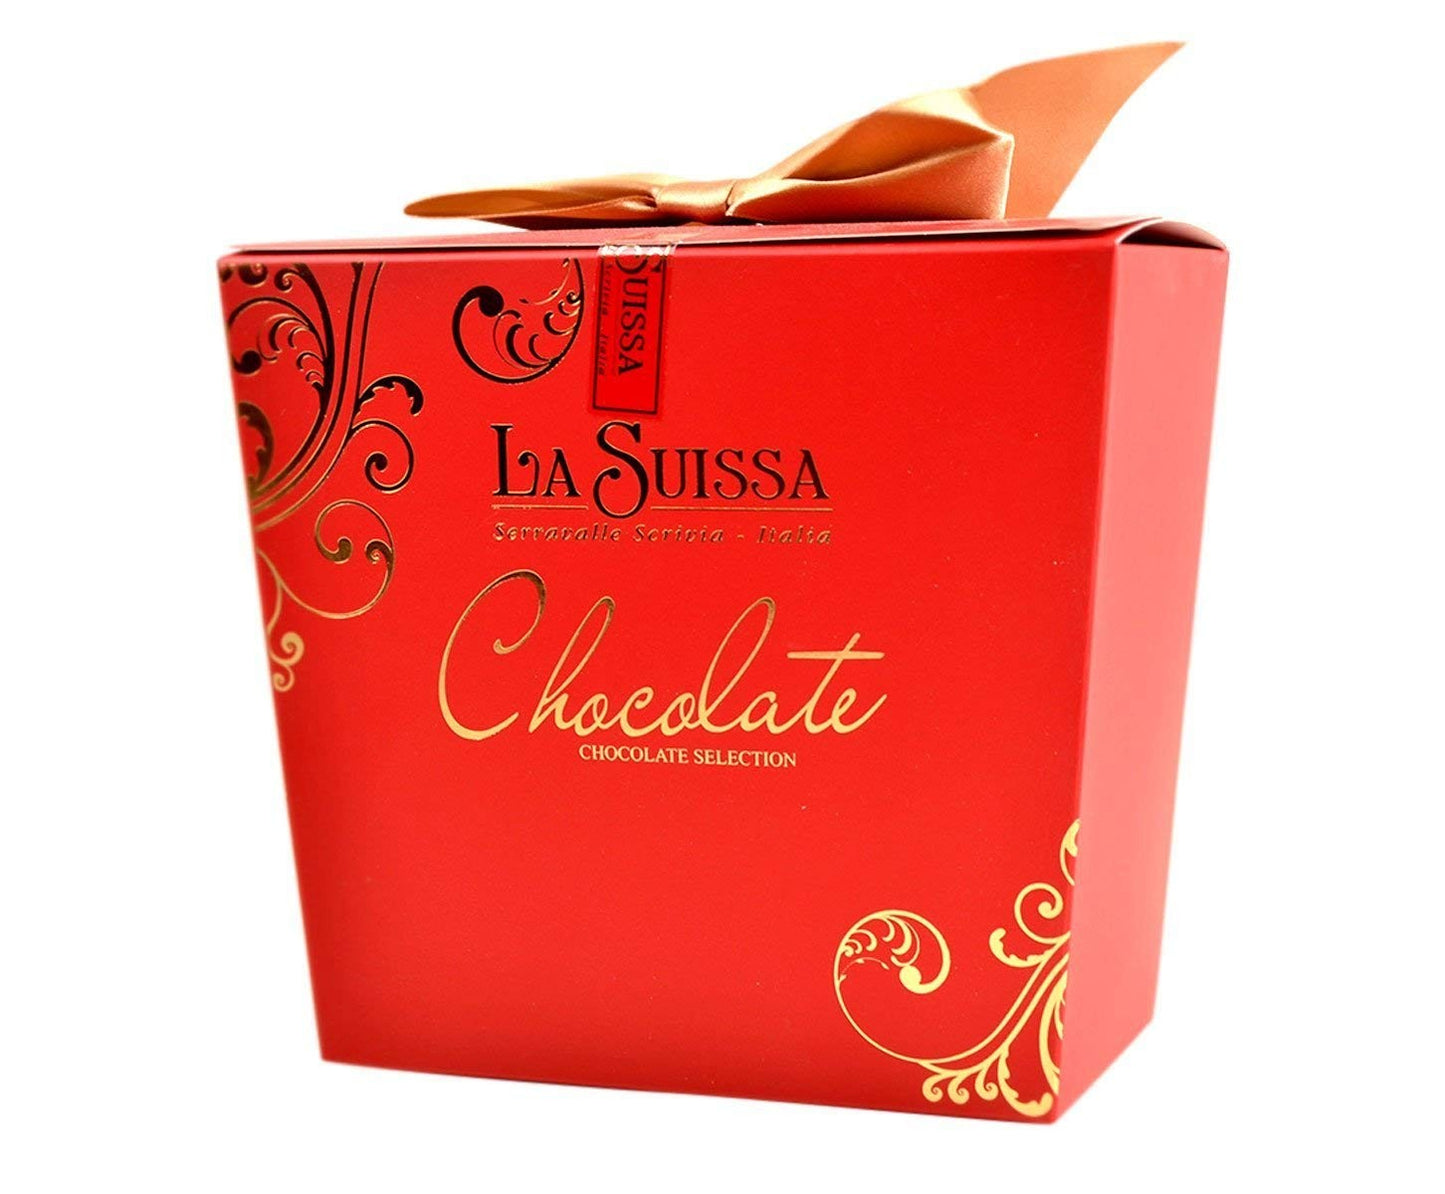 Cioccolatini La Suissa Scatola Supreme gr.450